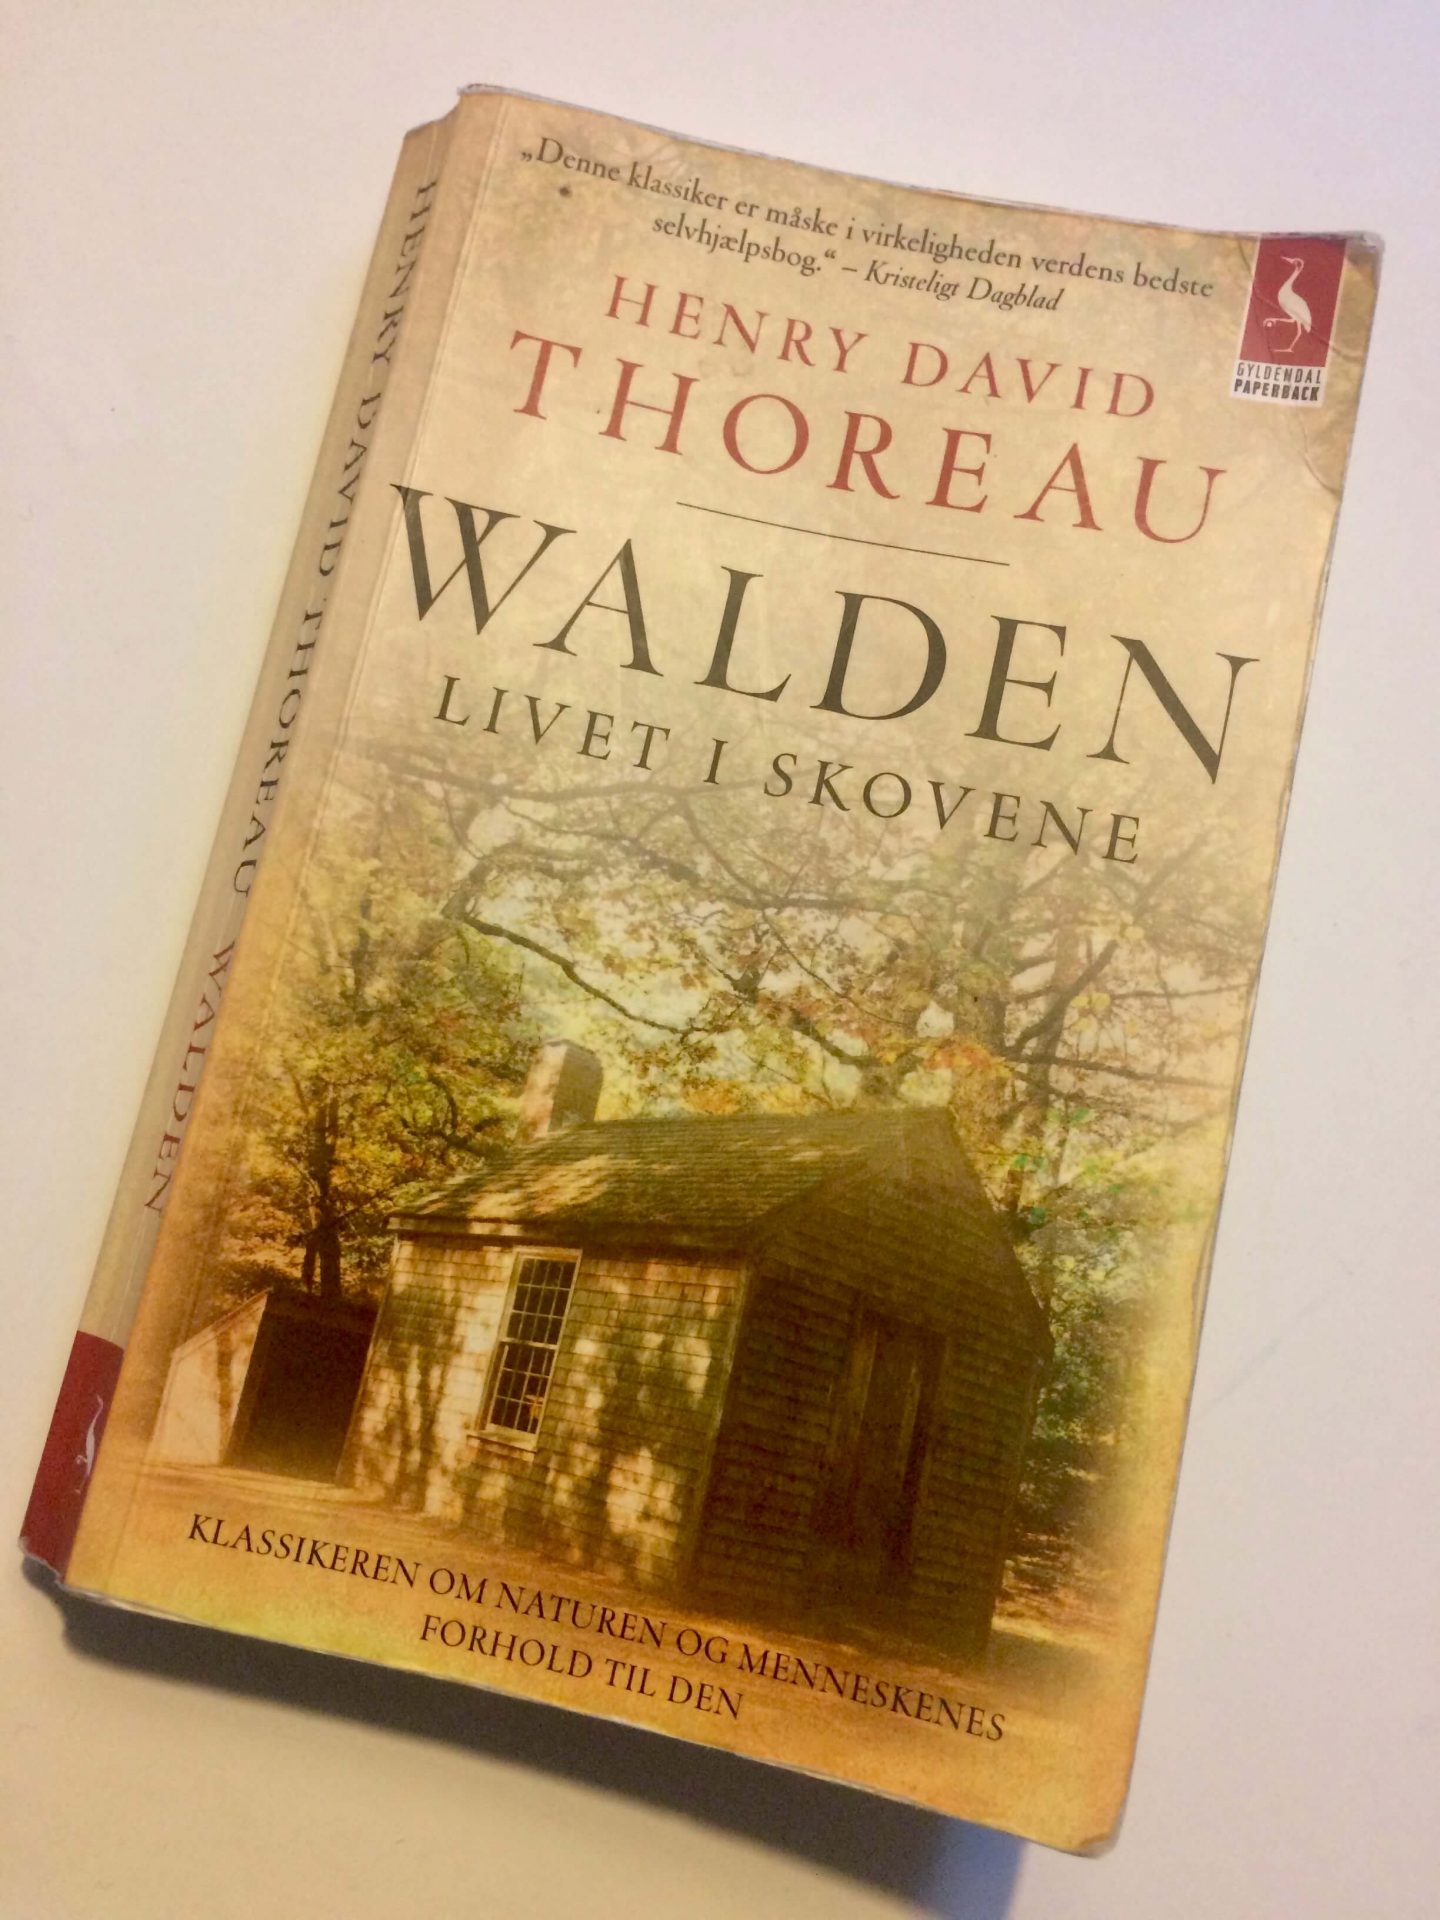 Forsiden af  bogen 'Walden - Livet i skovene' af Henry David Thoreau.